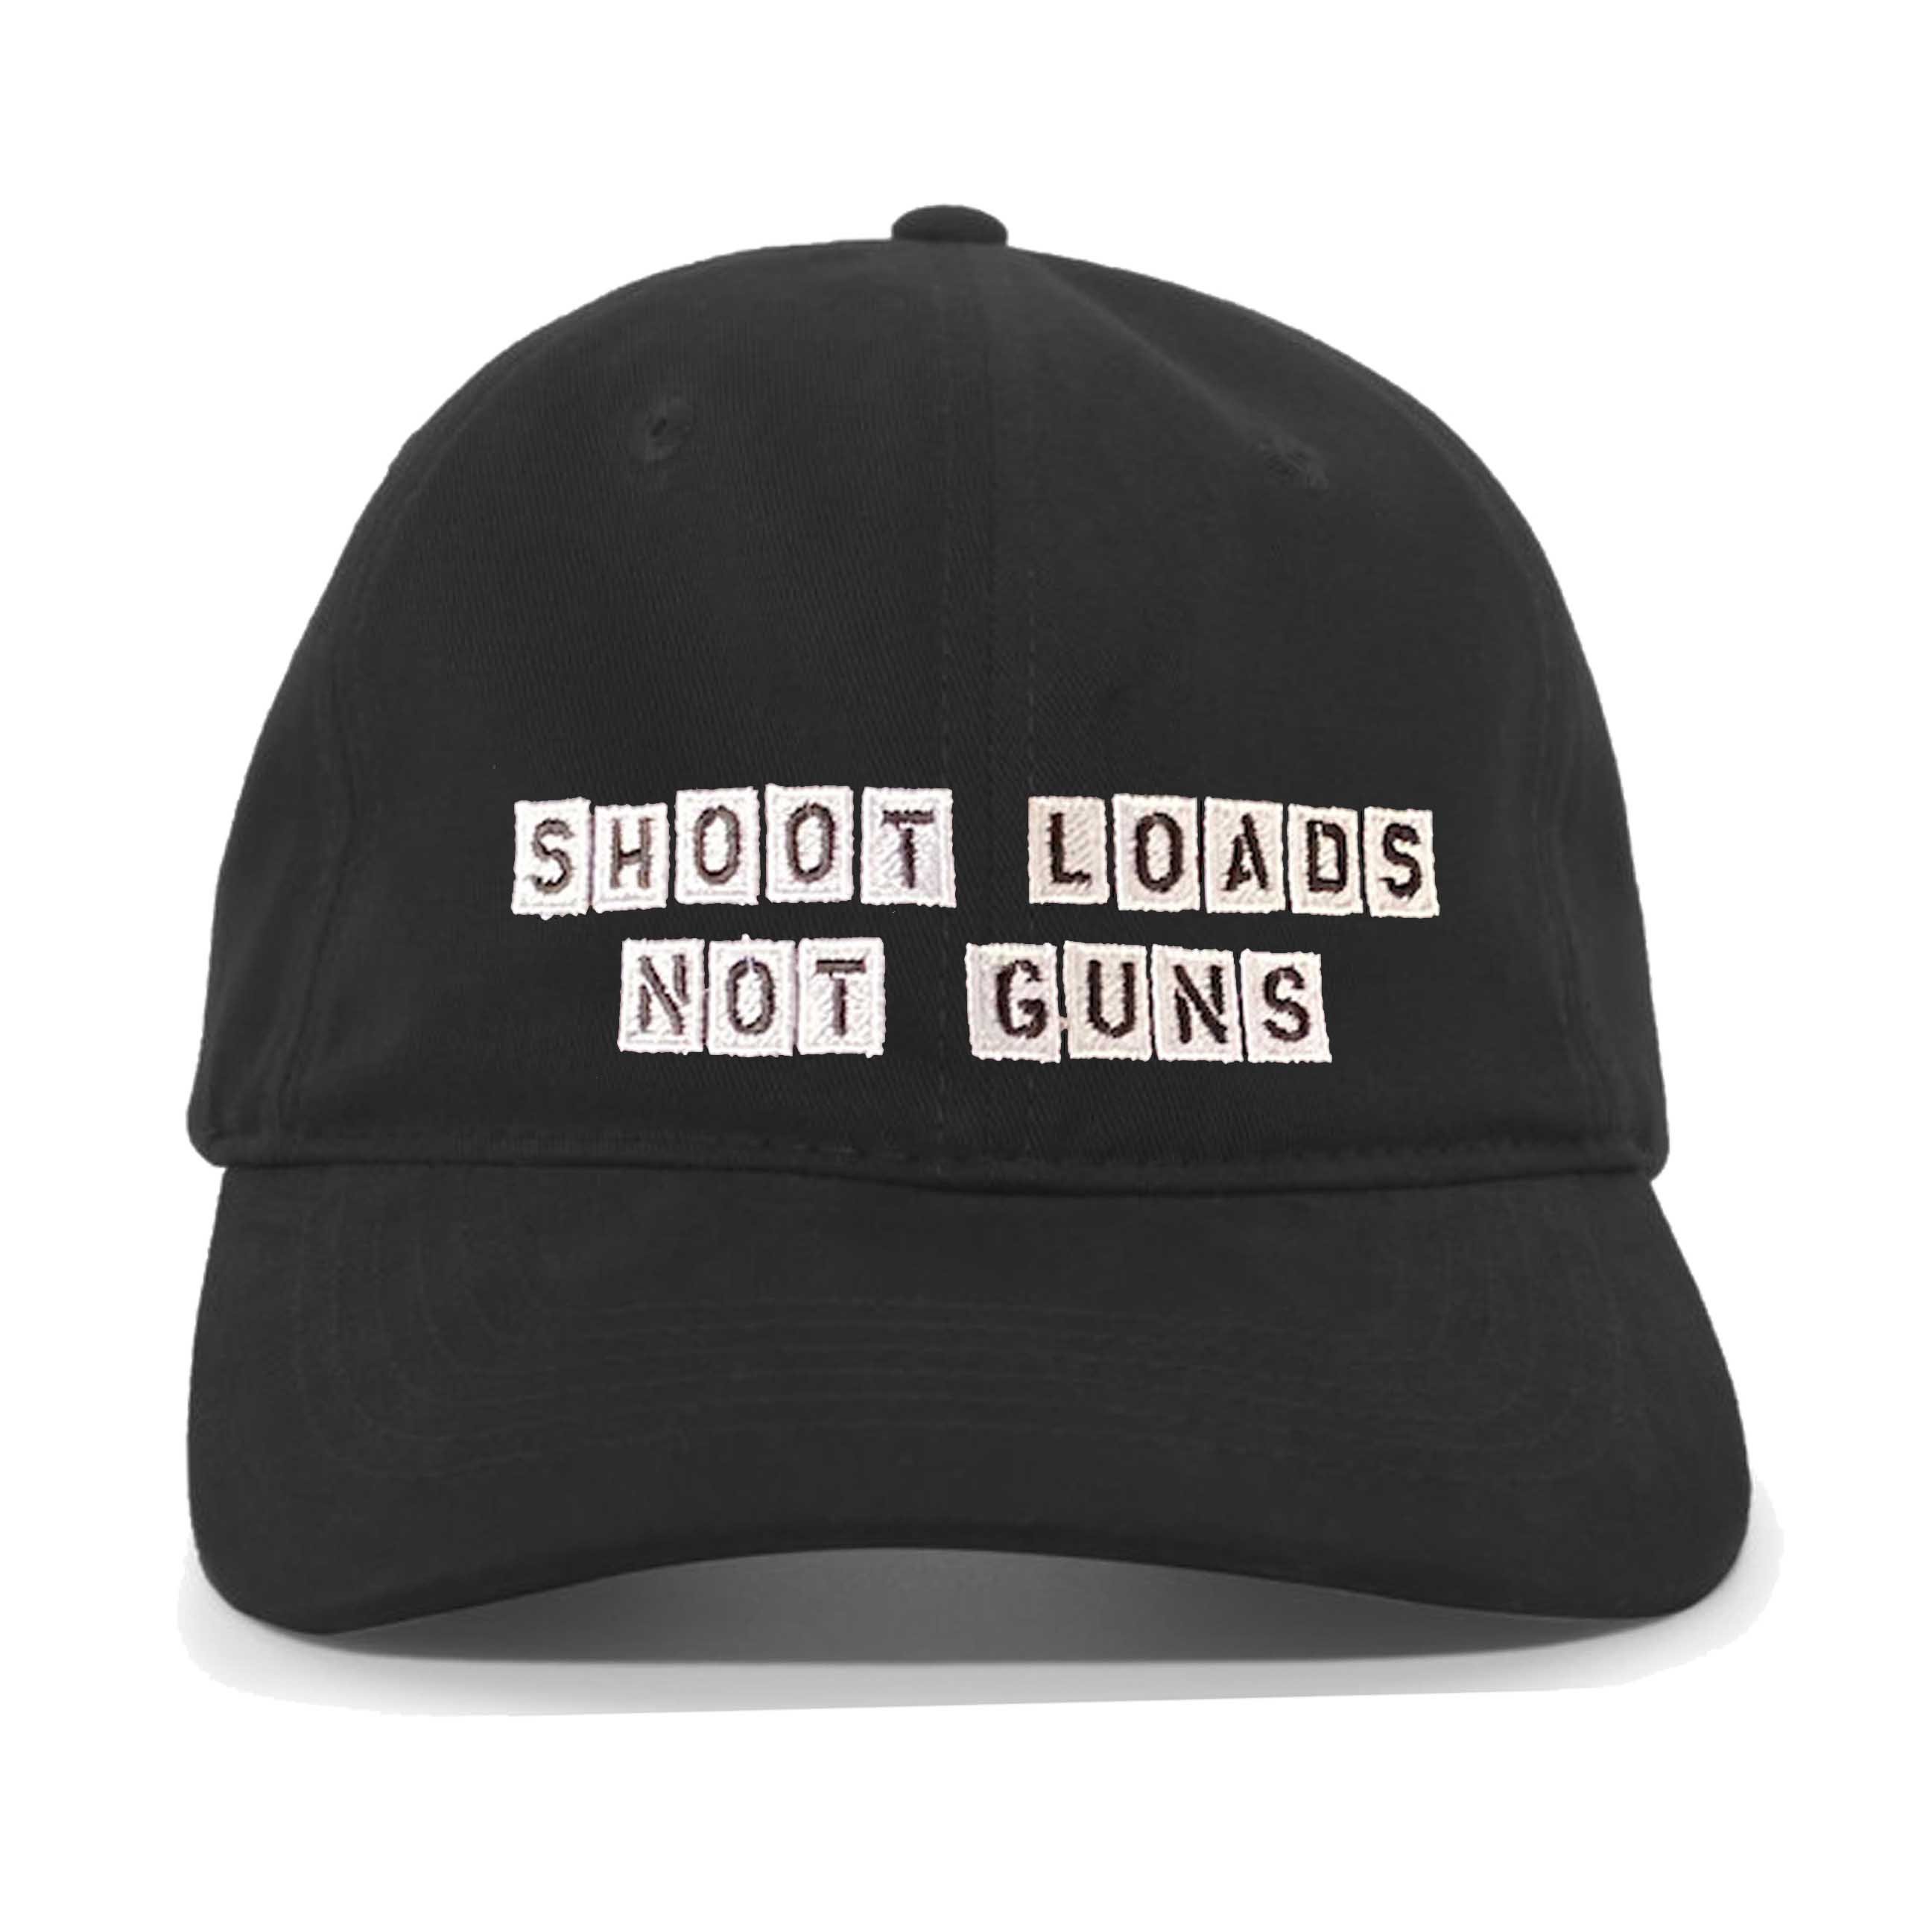 Shoot Loads Not Guns dad twill hat black